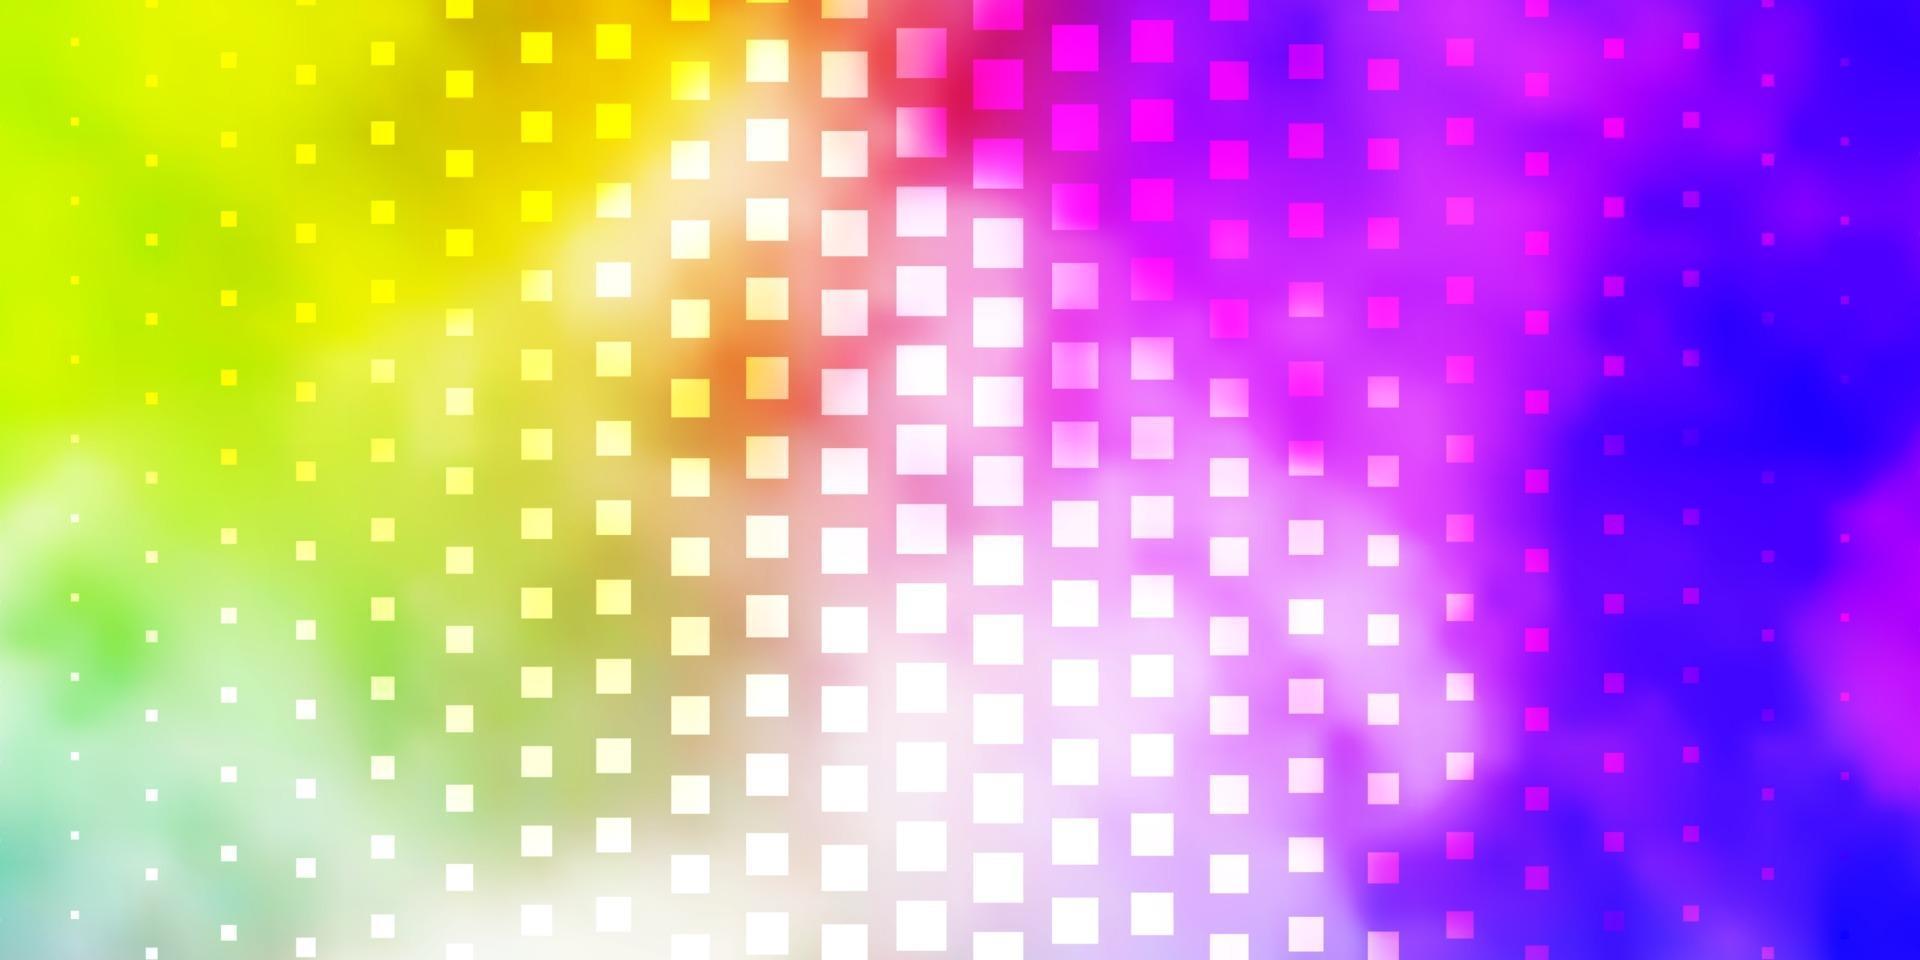 plantilla de vector multicolor claro con rectángulos.